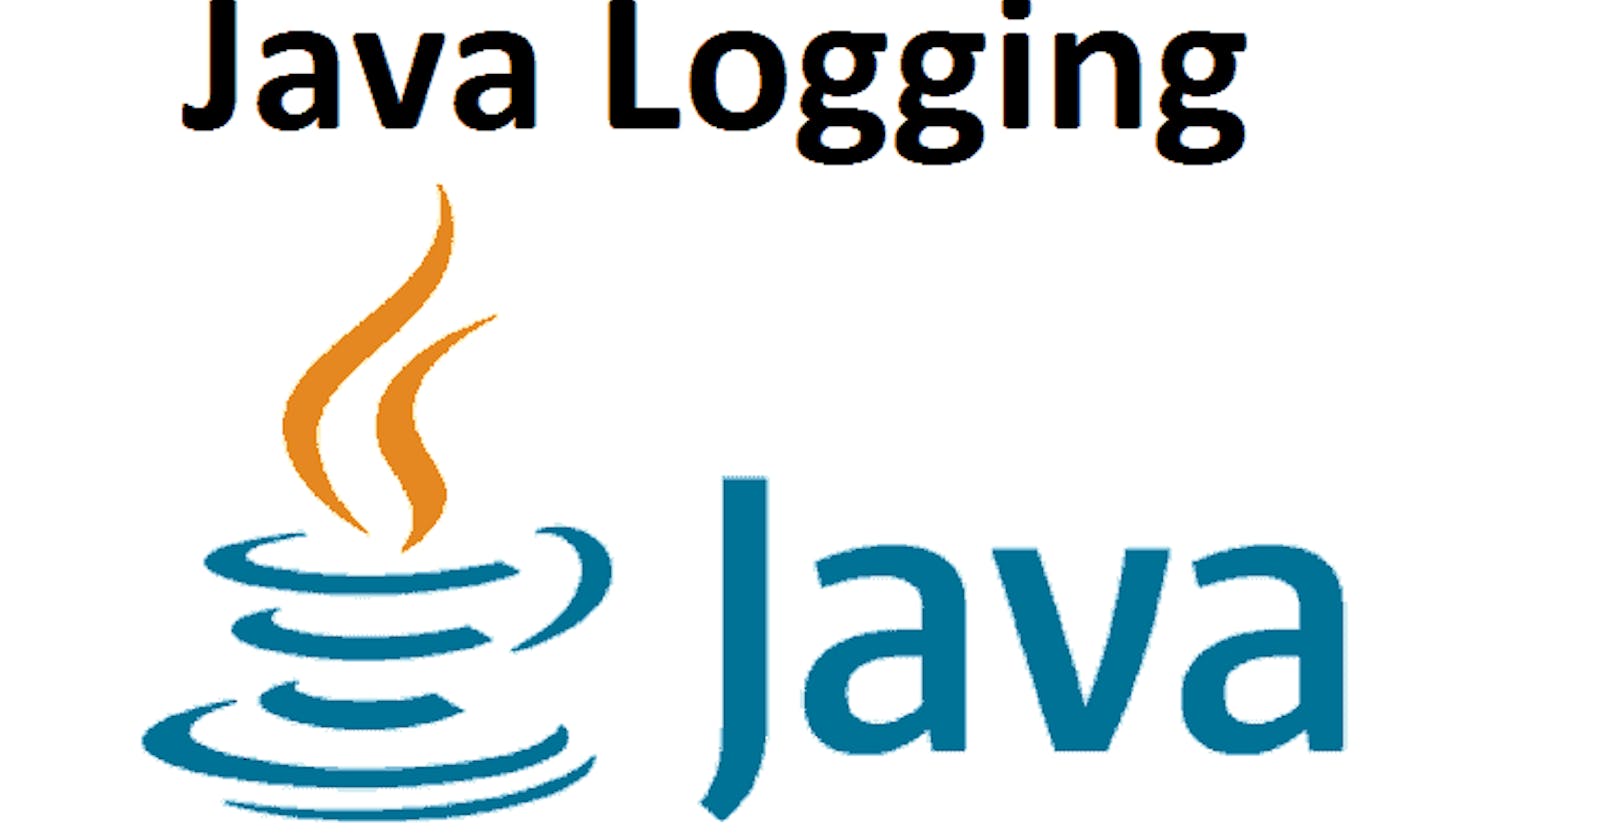 Logger in Java!!!